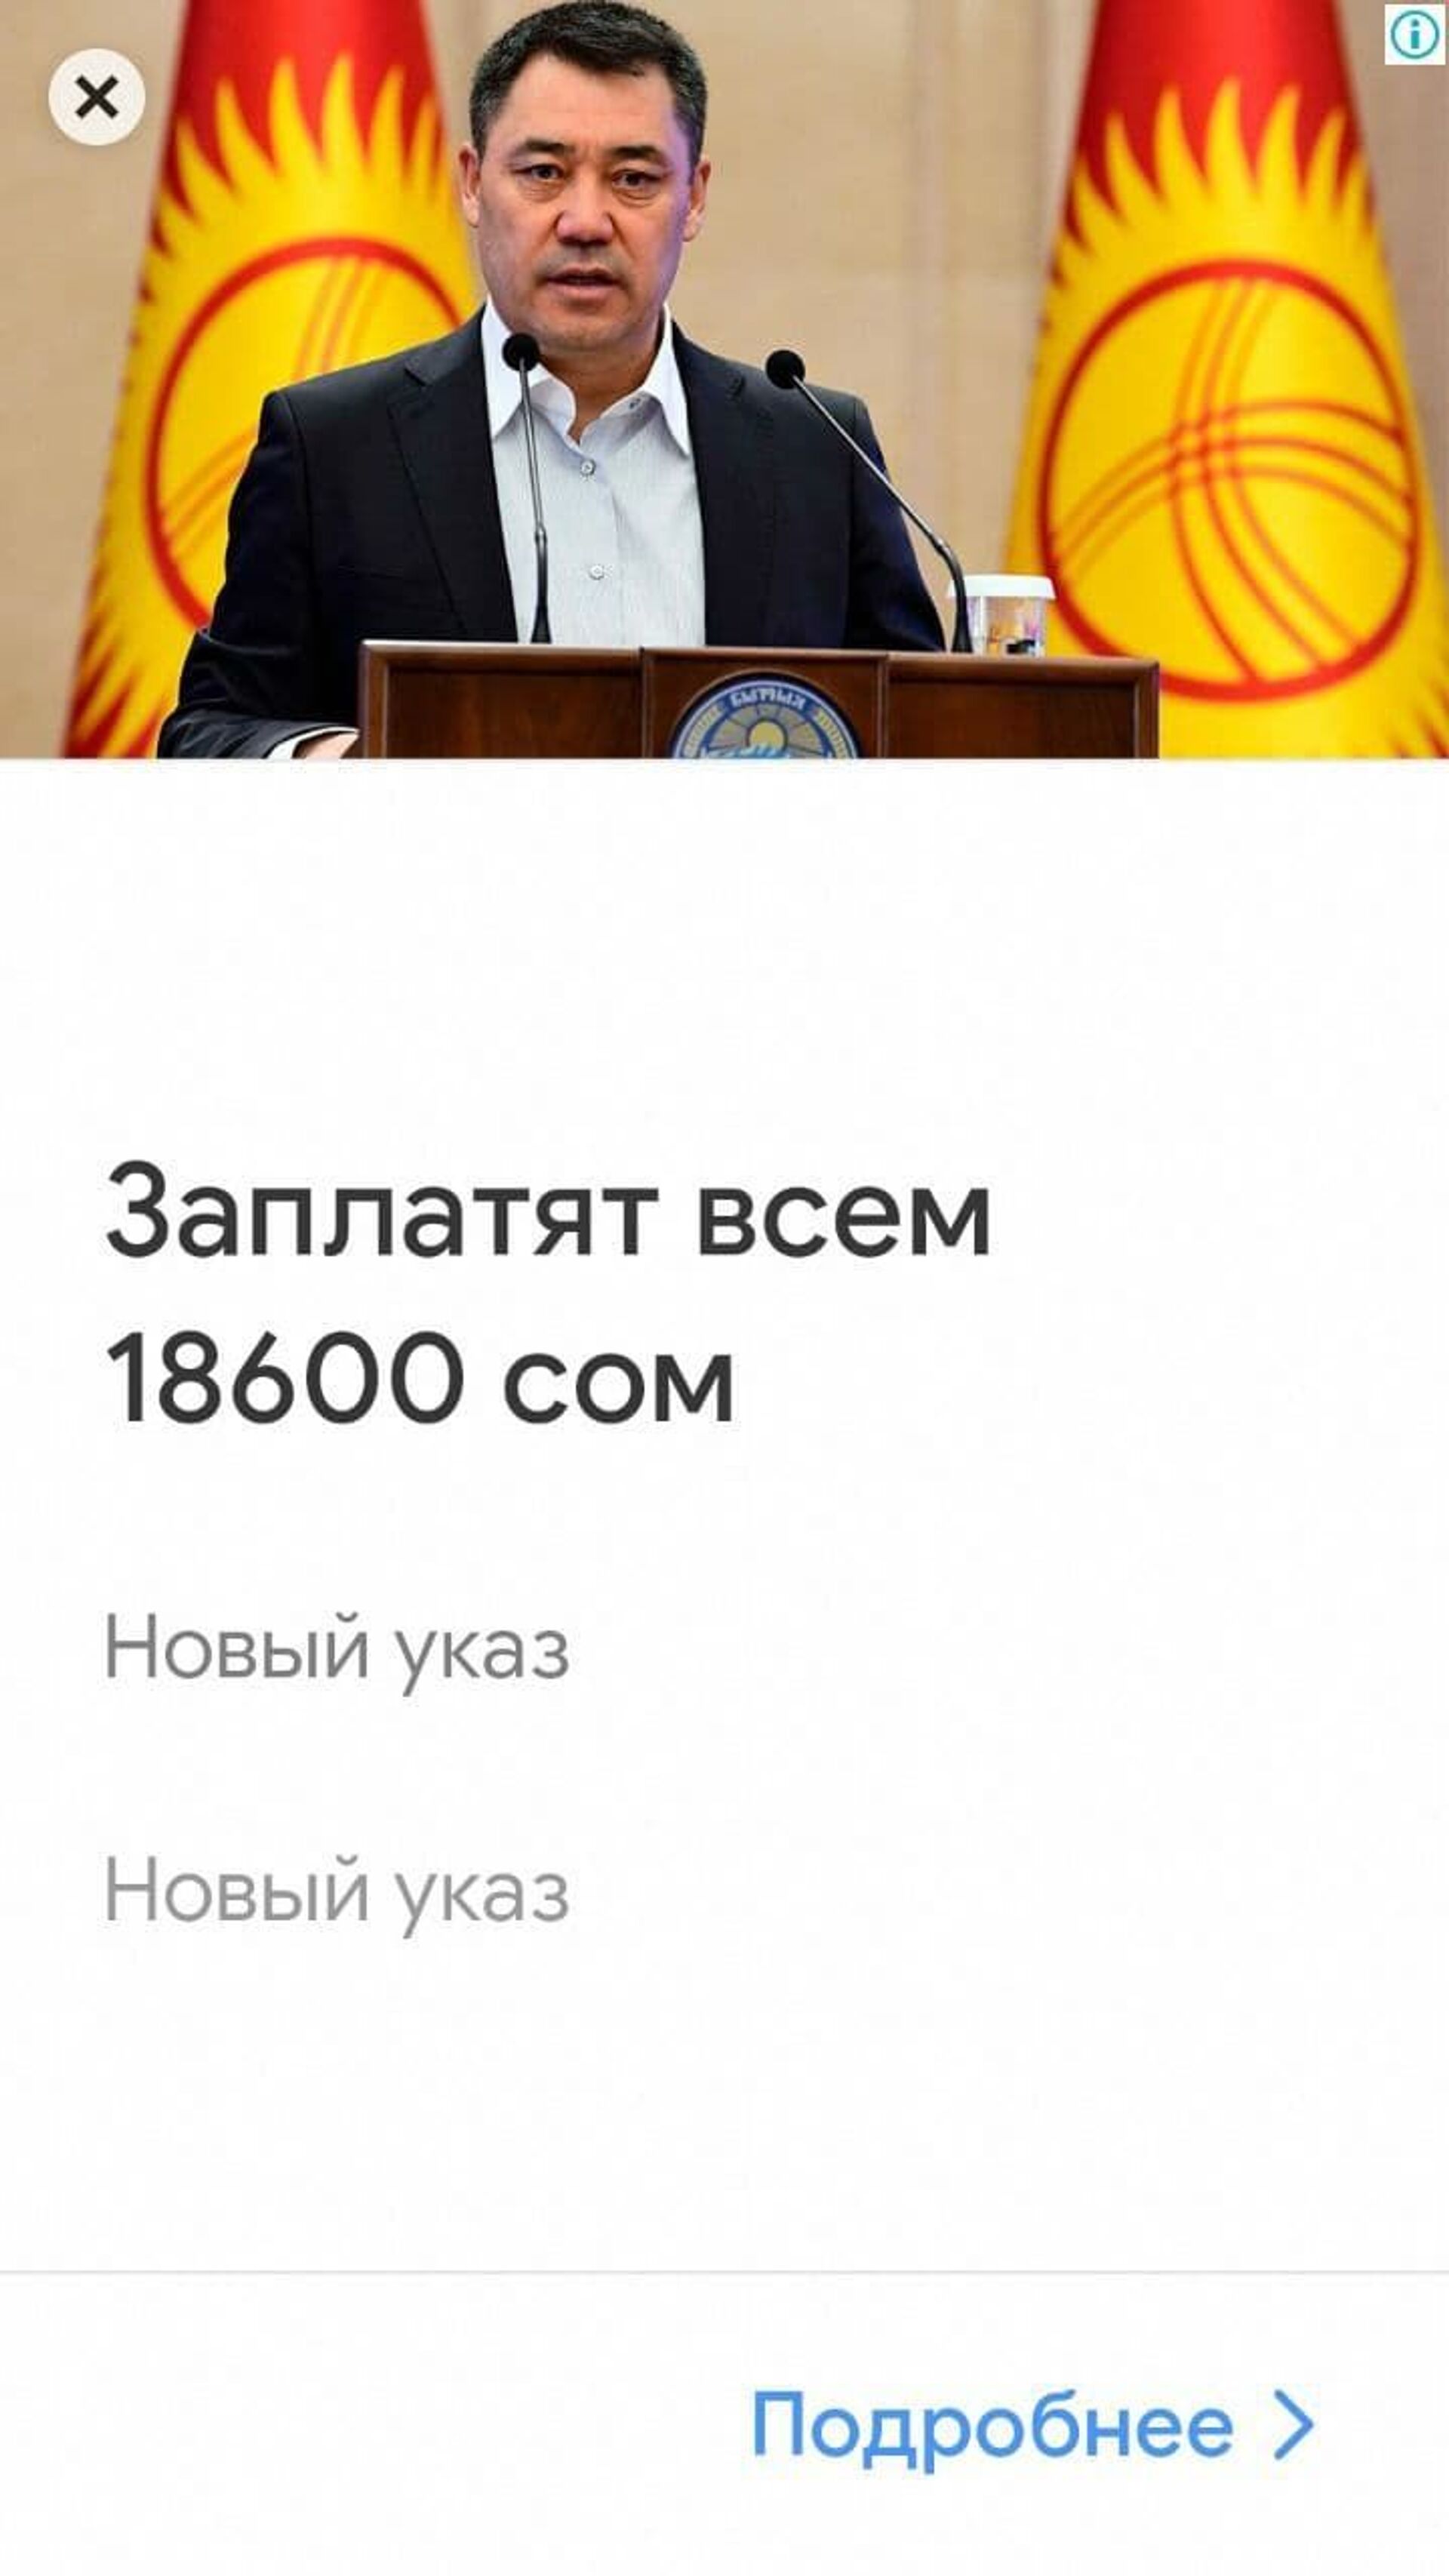 Кыргызстанцам выплатят 18,6 тысячи сомов по указу Жапарова? Это фейк - Sputnik Кыргызстан, 1920, 20.08.2021